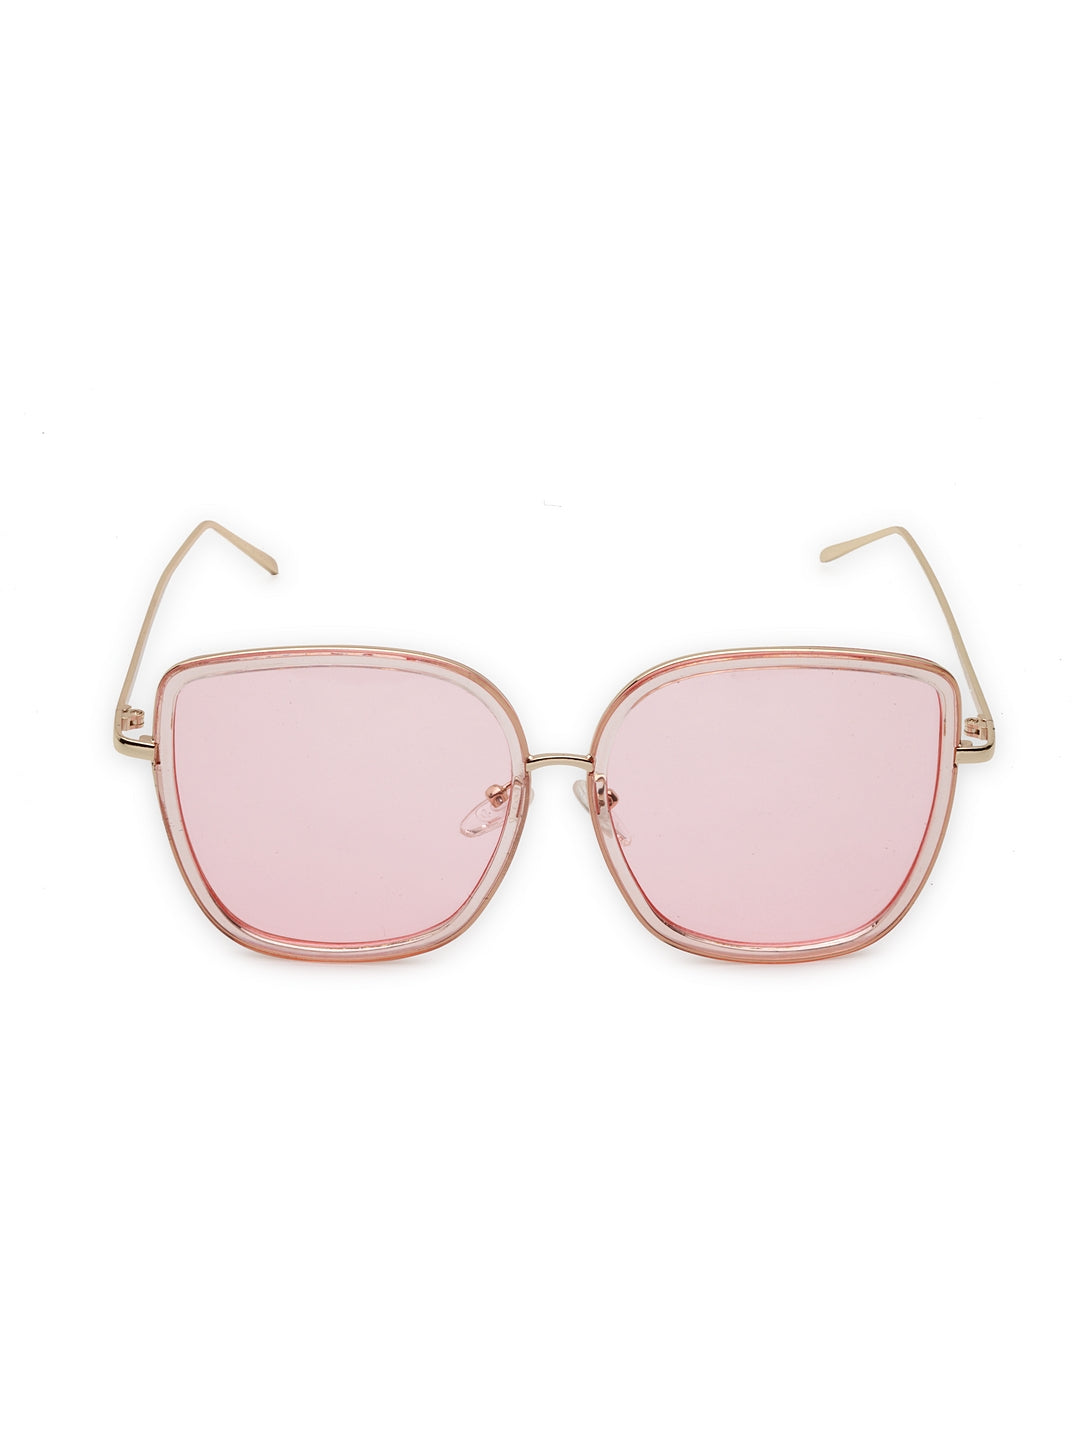 Gafas de sol transparentes de moda en tonos rosas de verano de gran tamaño para mujer